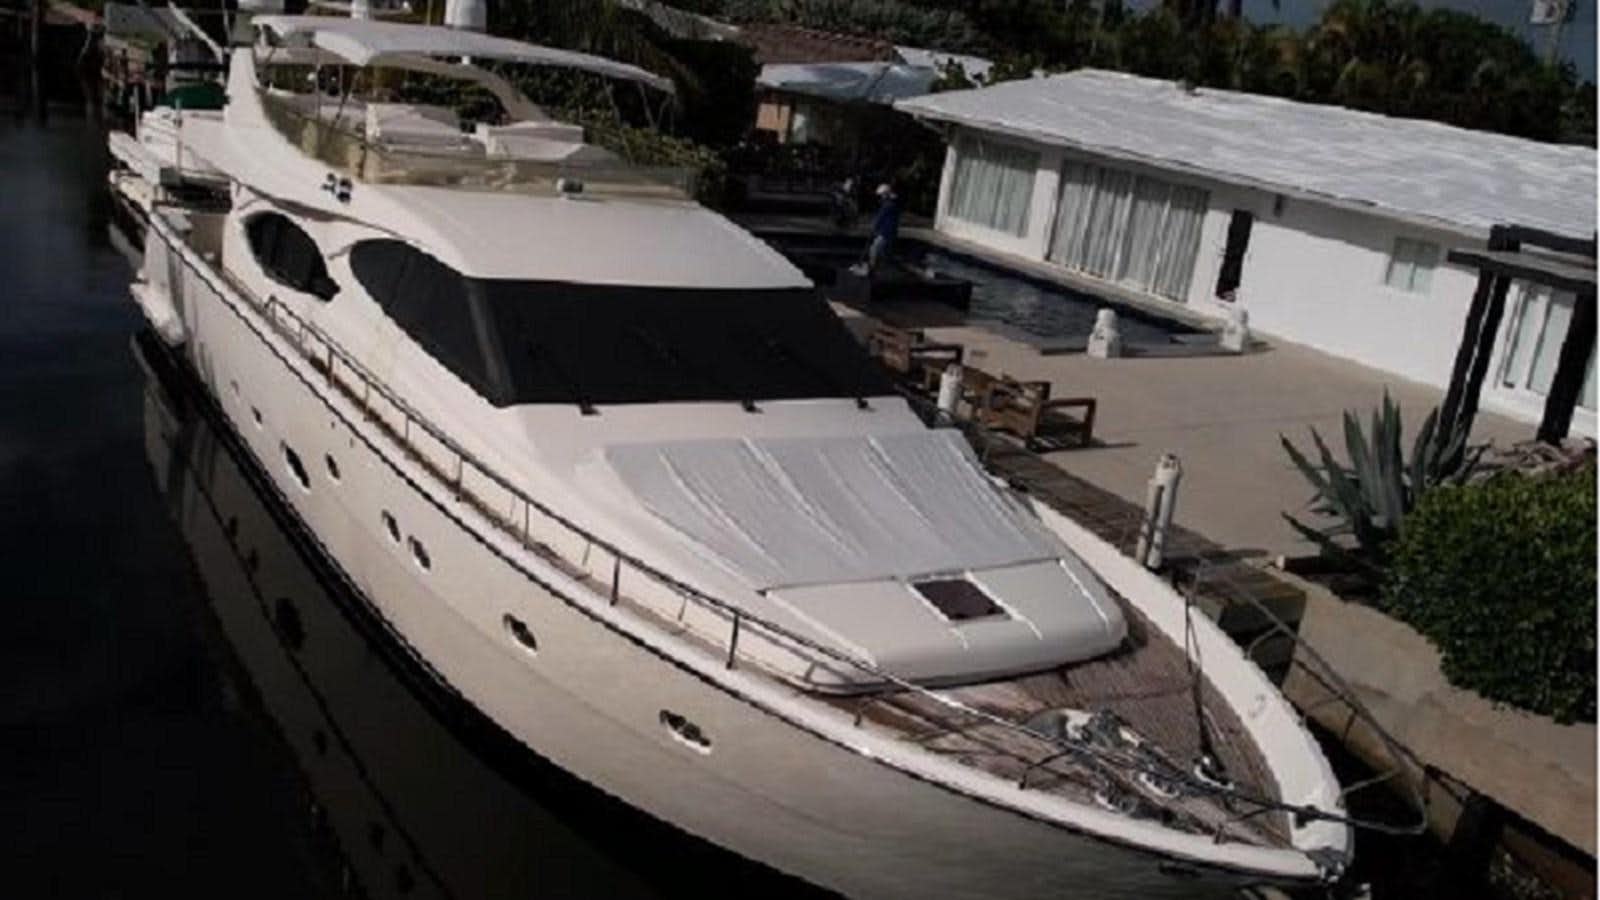 a large boat docked aboard 2005 760 FERRETTI MOTOR YACHT Yacht for Sale